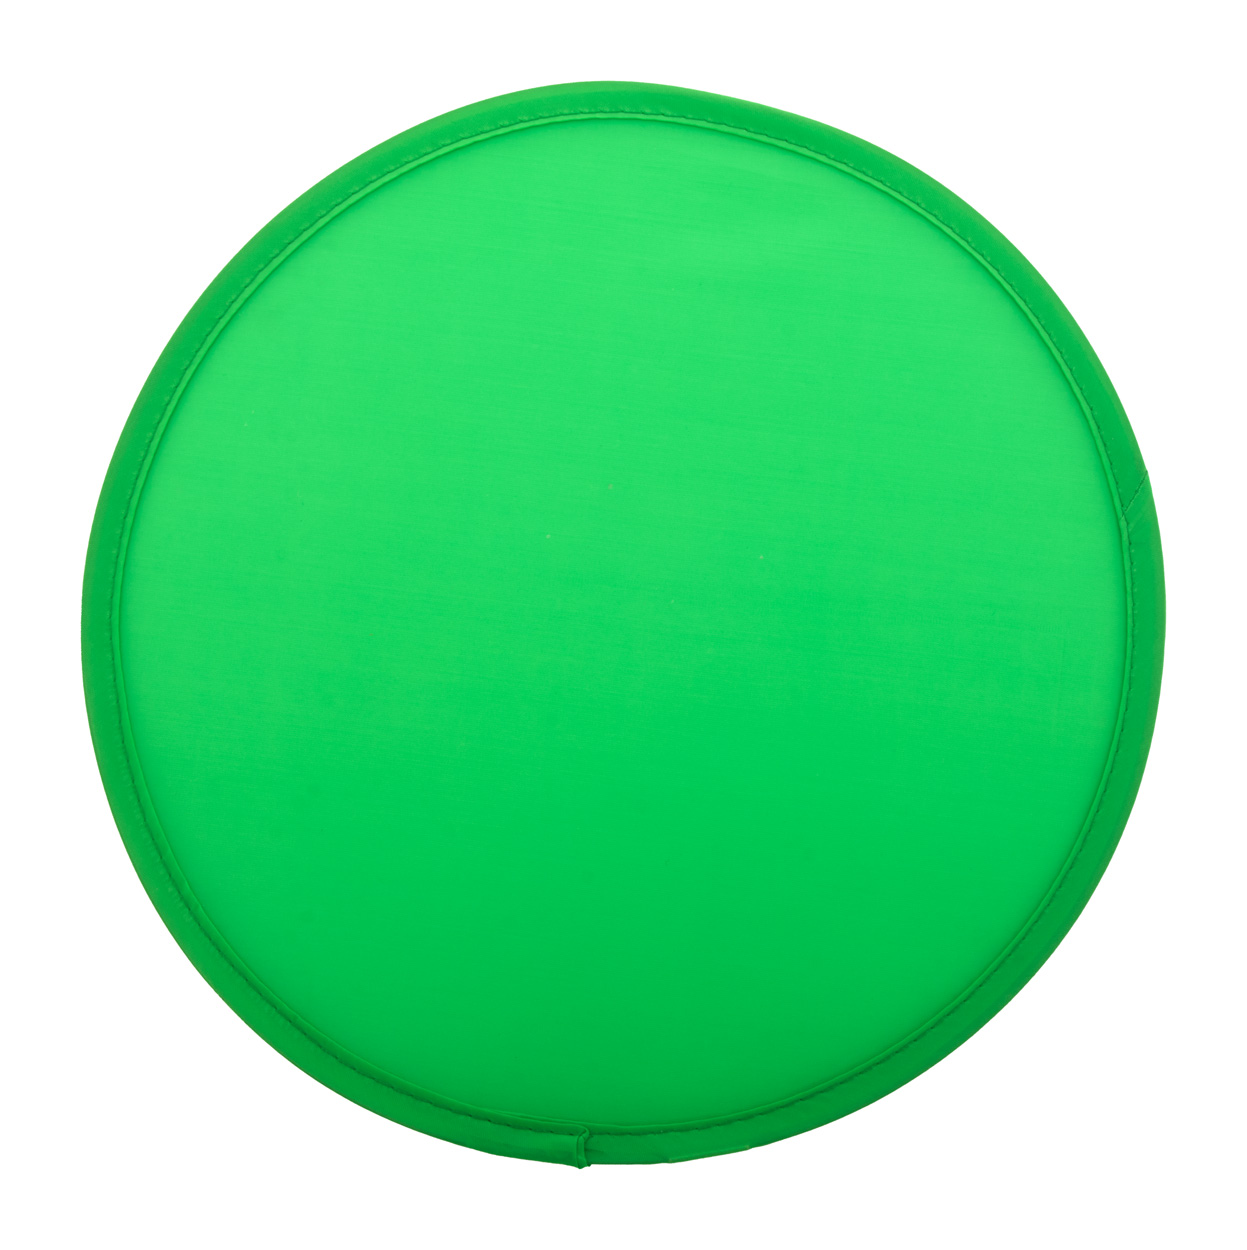 Rocket RPET frisbee - green